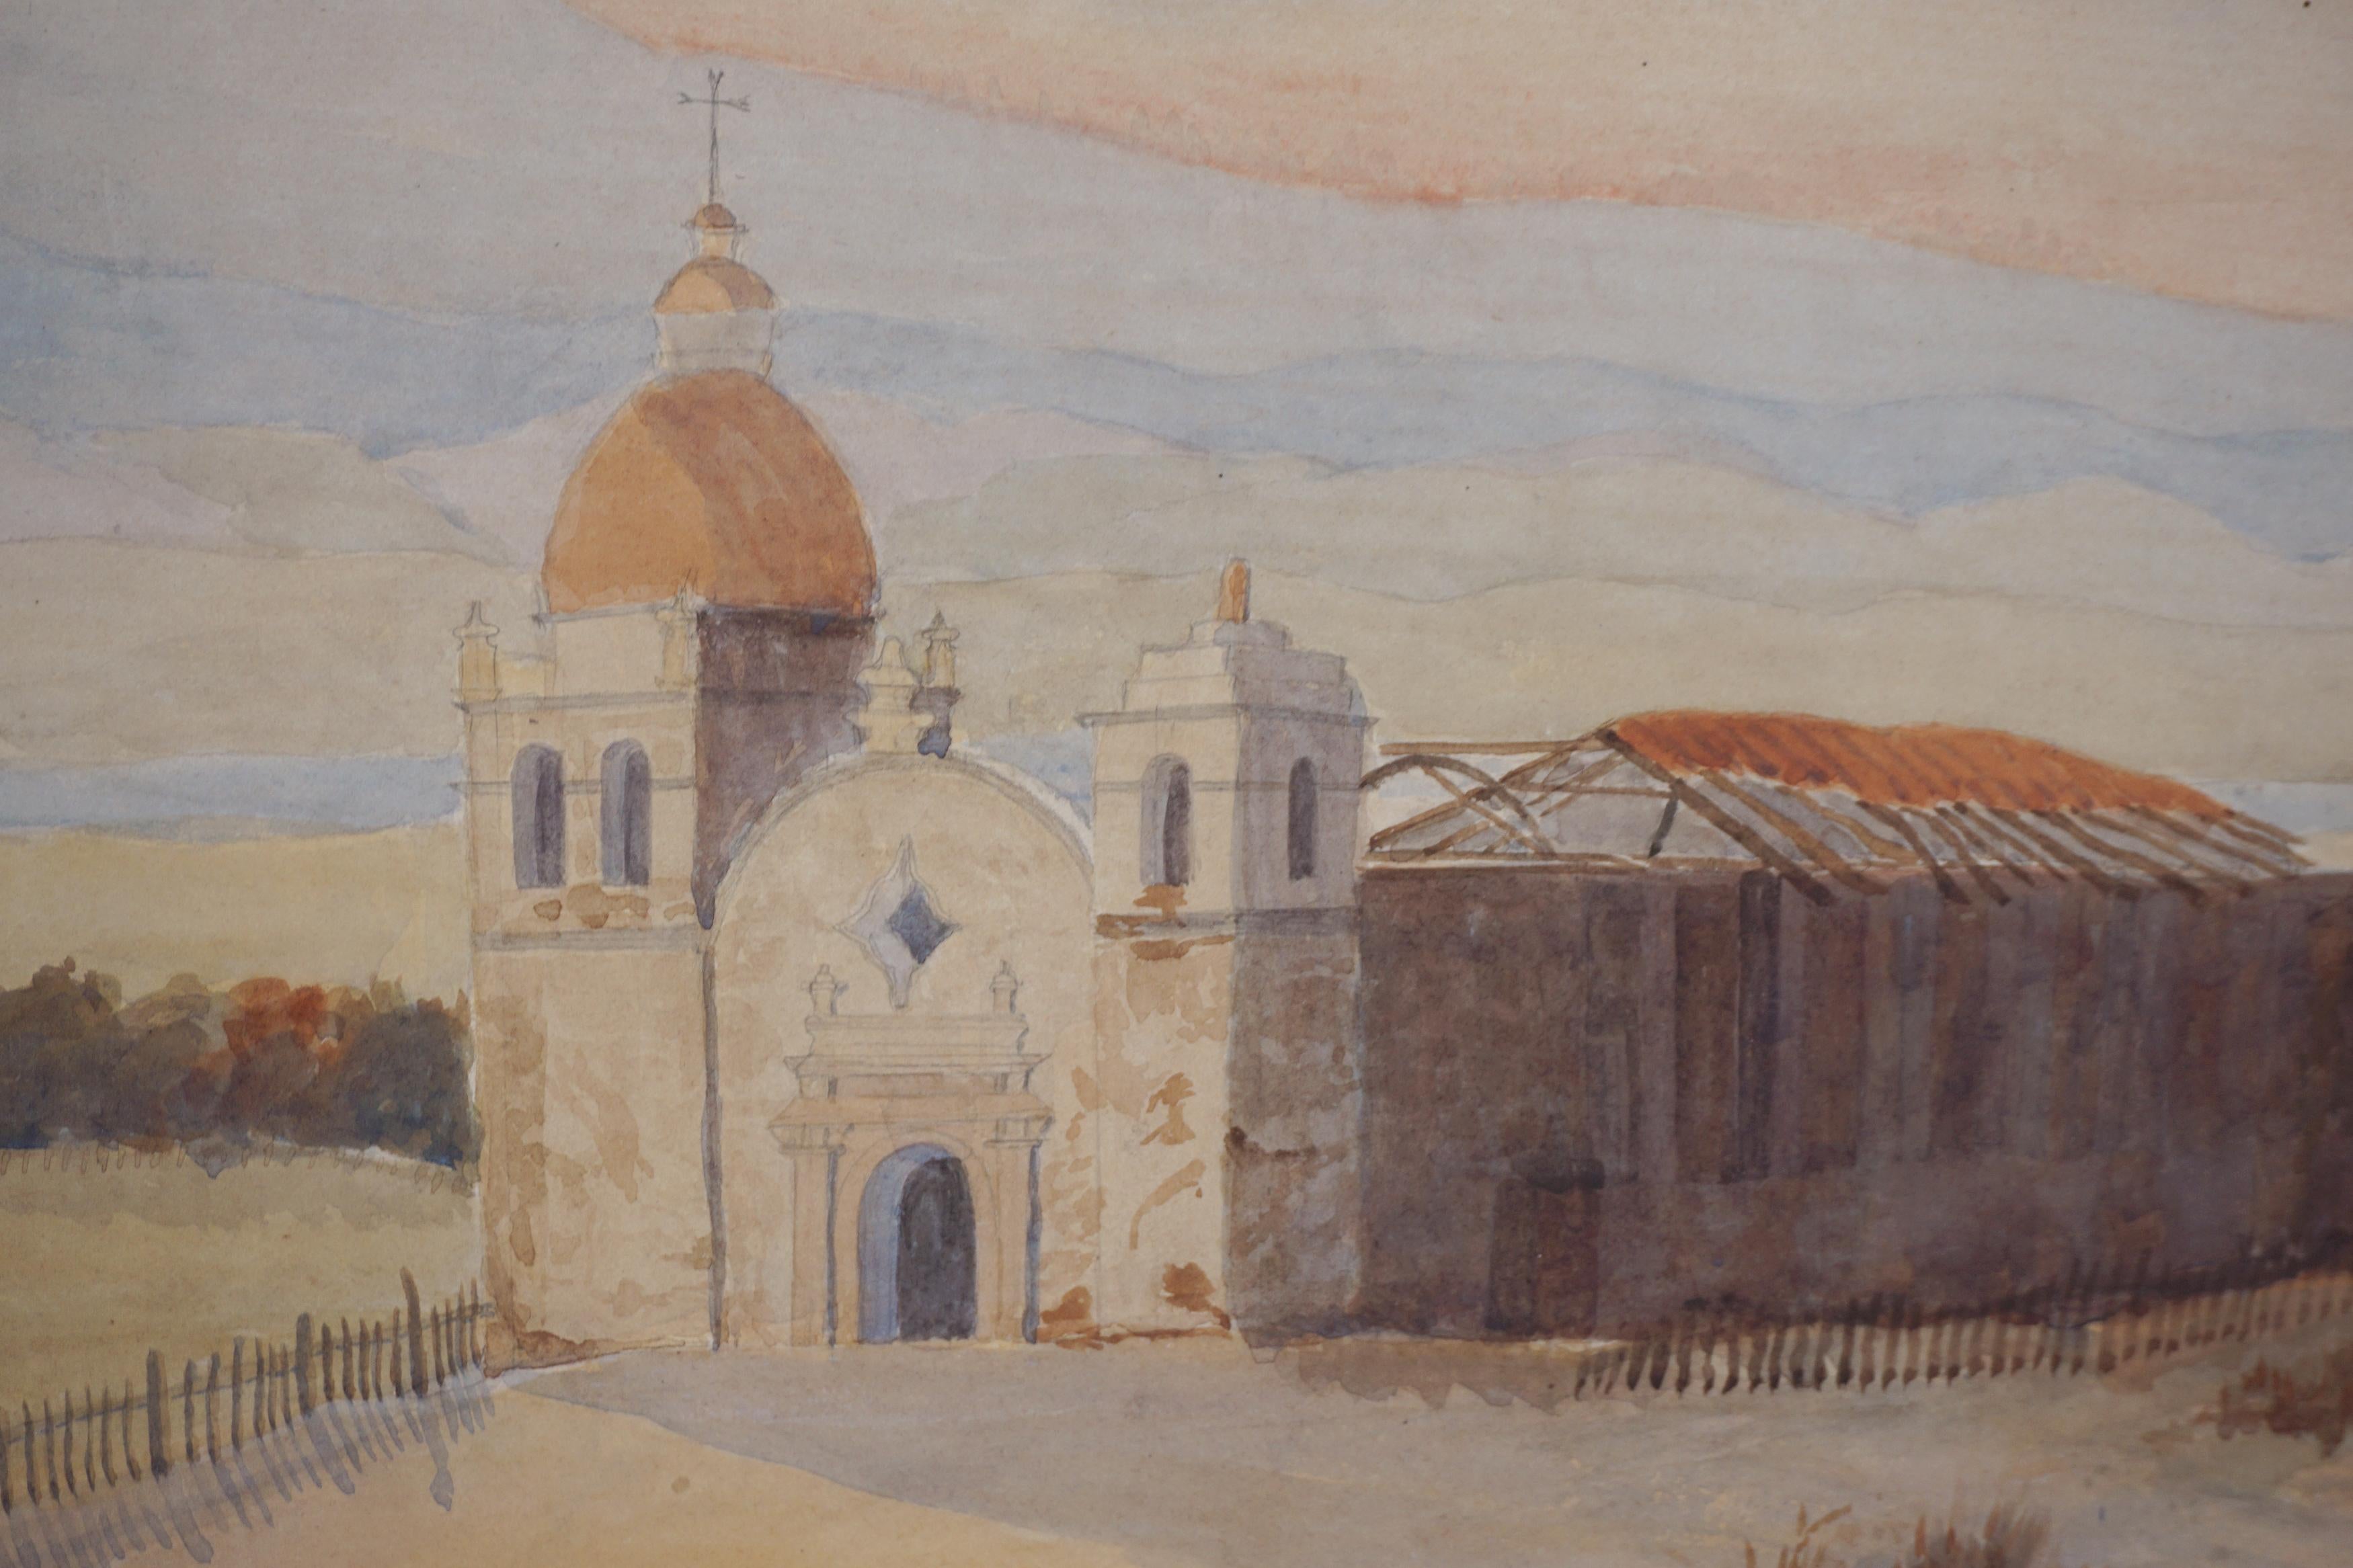 Aquarell der Mission Carmel, Kalifornien, frühes 20. Jahrhundert.  (Impressionismus), Painting, von Wallace Clinton Stratton